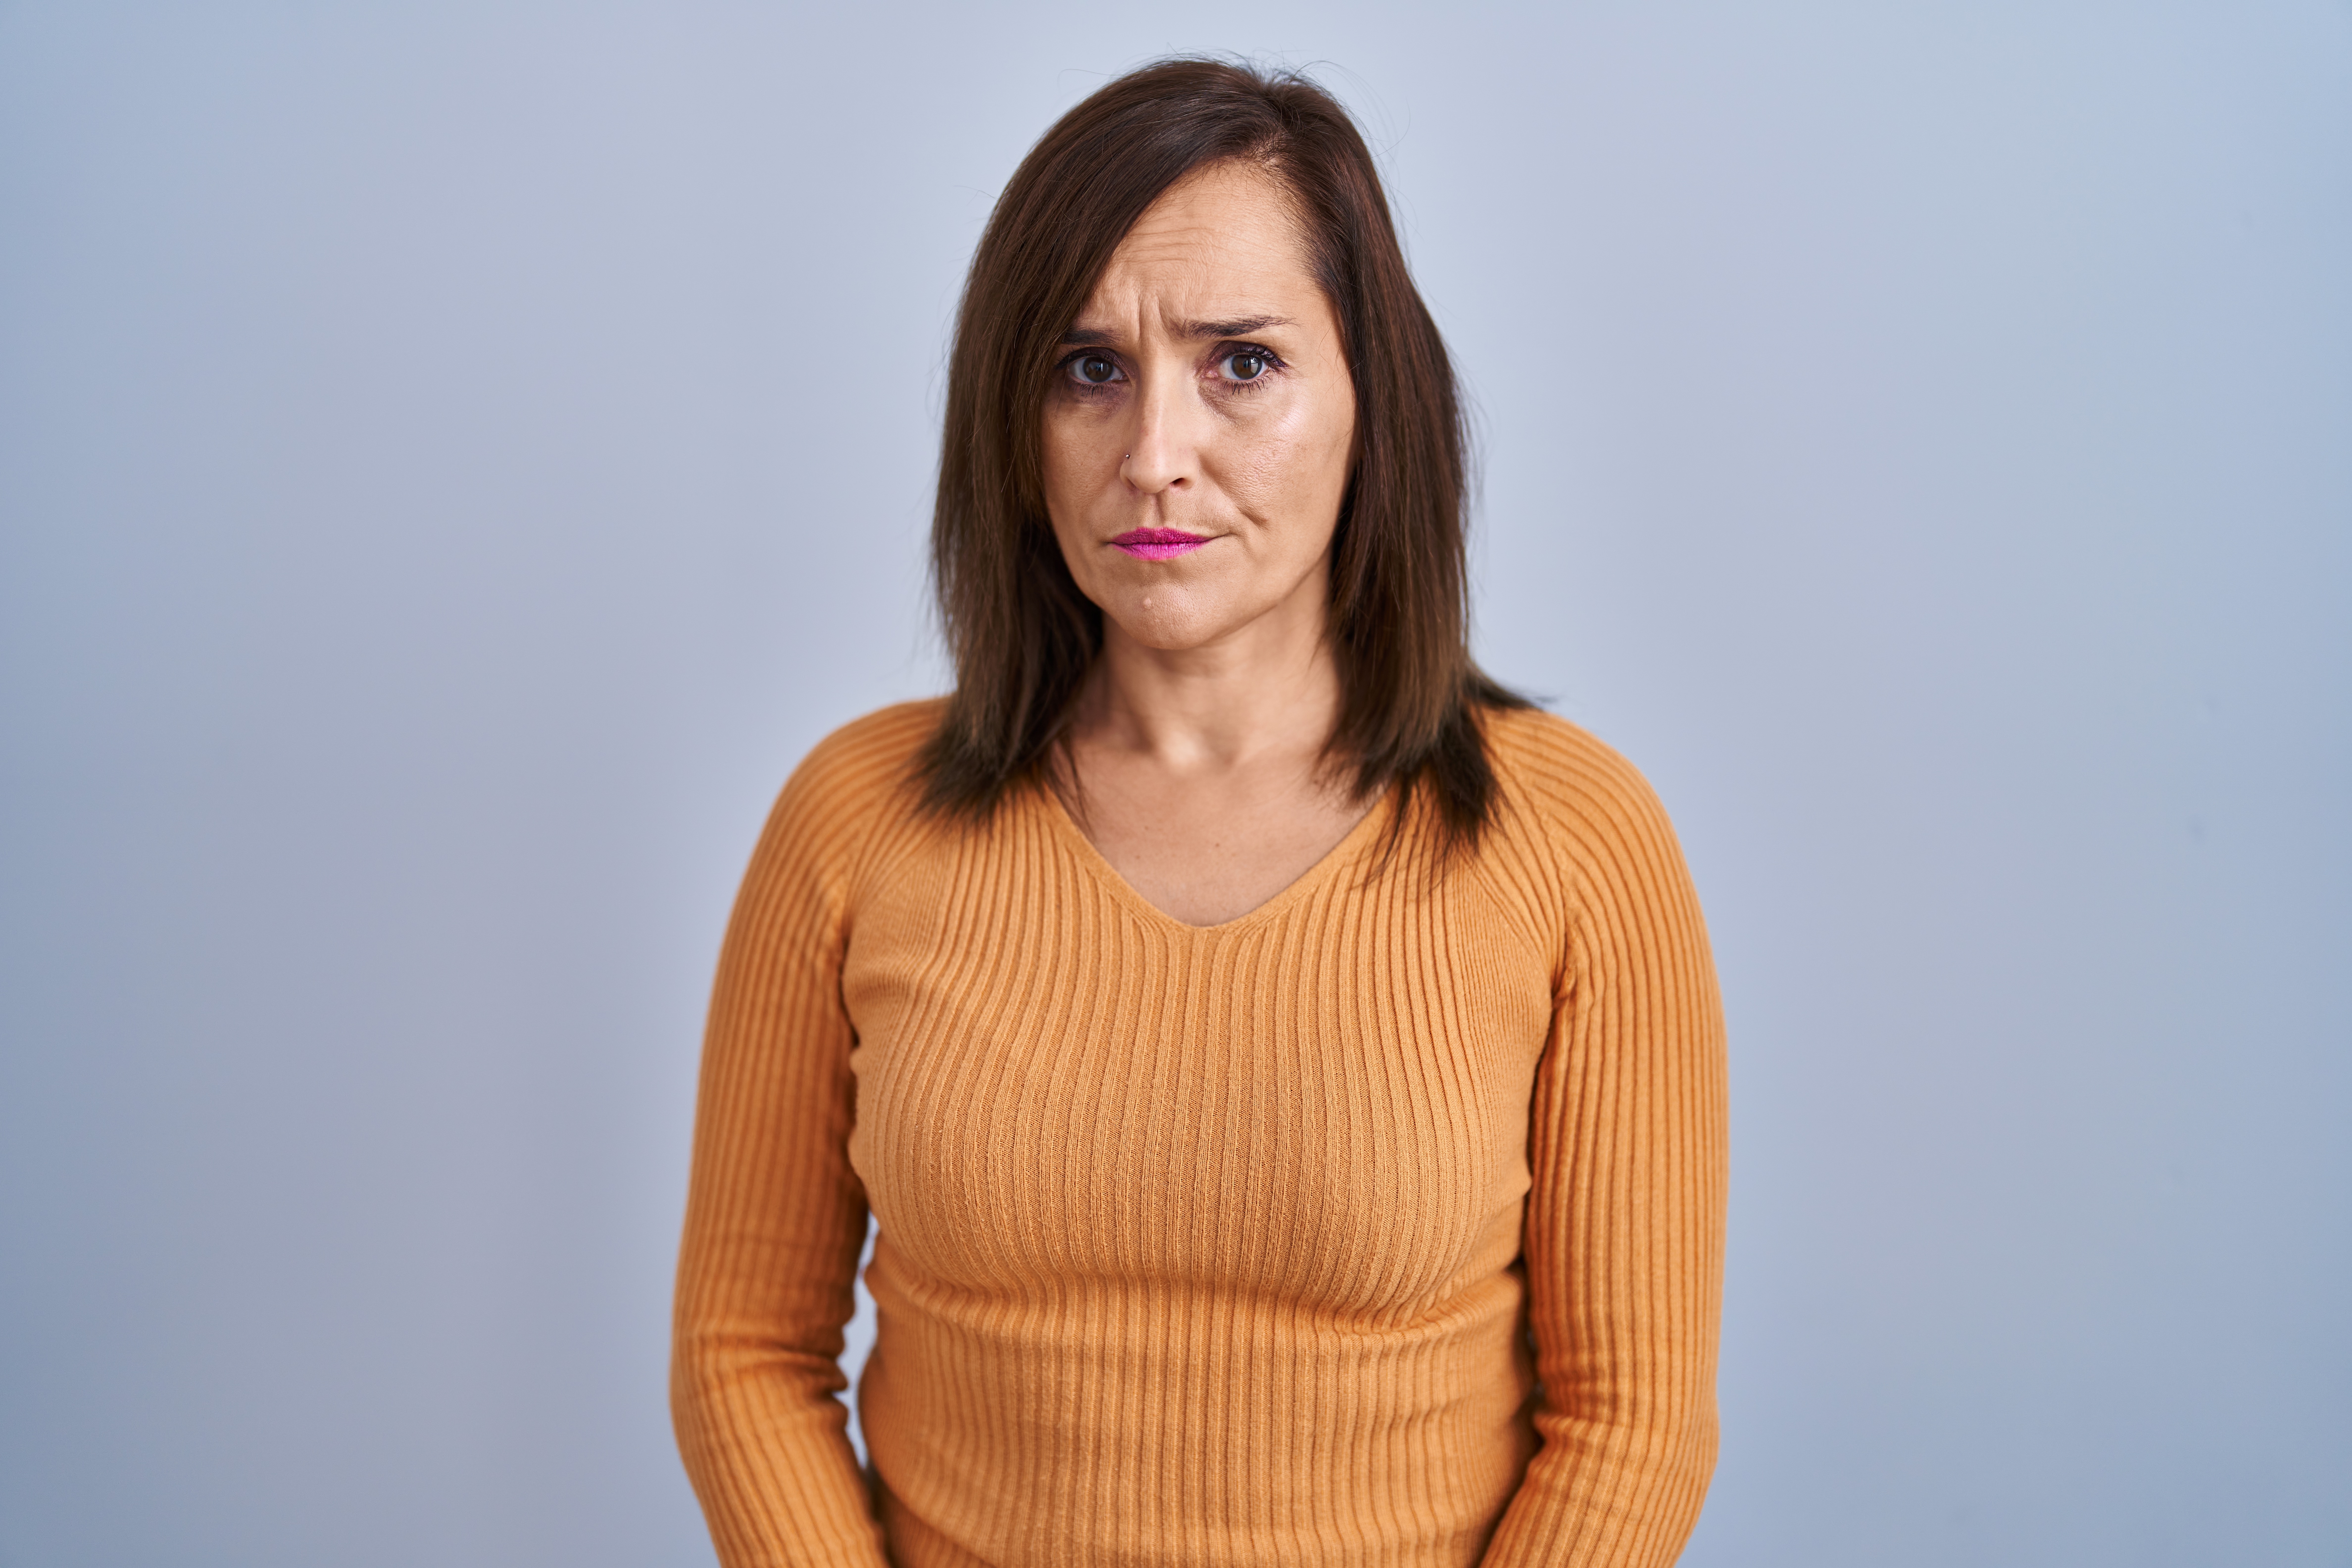 Eine Frau mit wütendem Blick | Quelle: Shutterstock